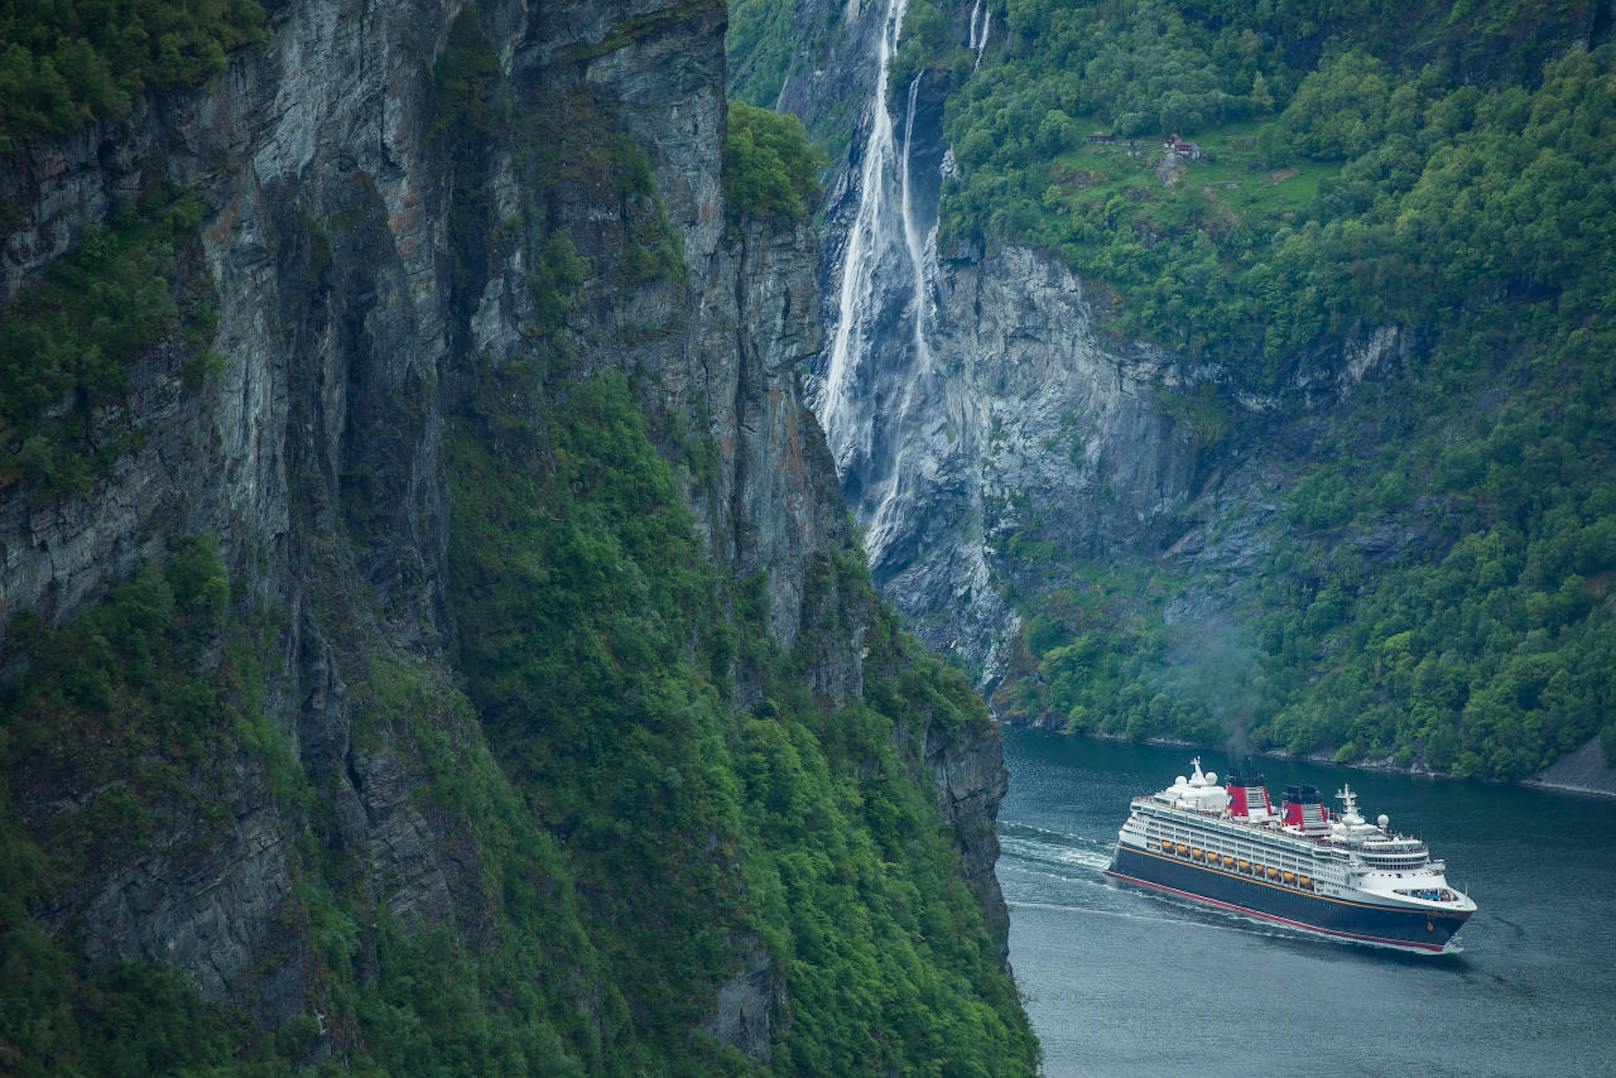 Und Norwegen erwägt, bereits fünf bekannte Fjorde für jene Kreuzfahrtschiffe zu sperren, die nicht den neuesten Umweltanforderungen entsprechen. Konkret geht es um den berühmten Geirangerfjord, den Nærøyfjord, den Aurlandsfjord, den Synnulvsfjord und den inneren Tafjord, die unter Weltkulturerbe stehen.